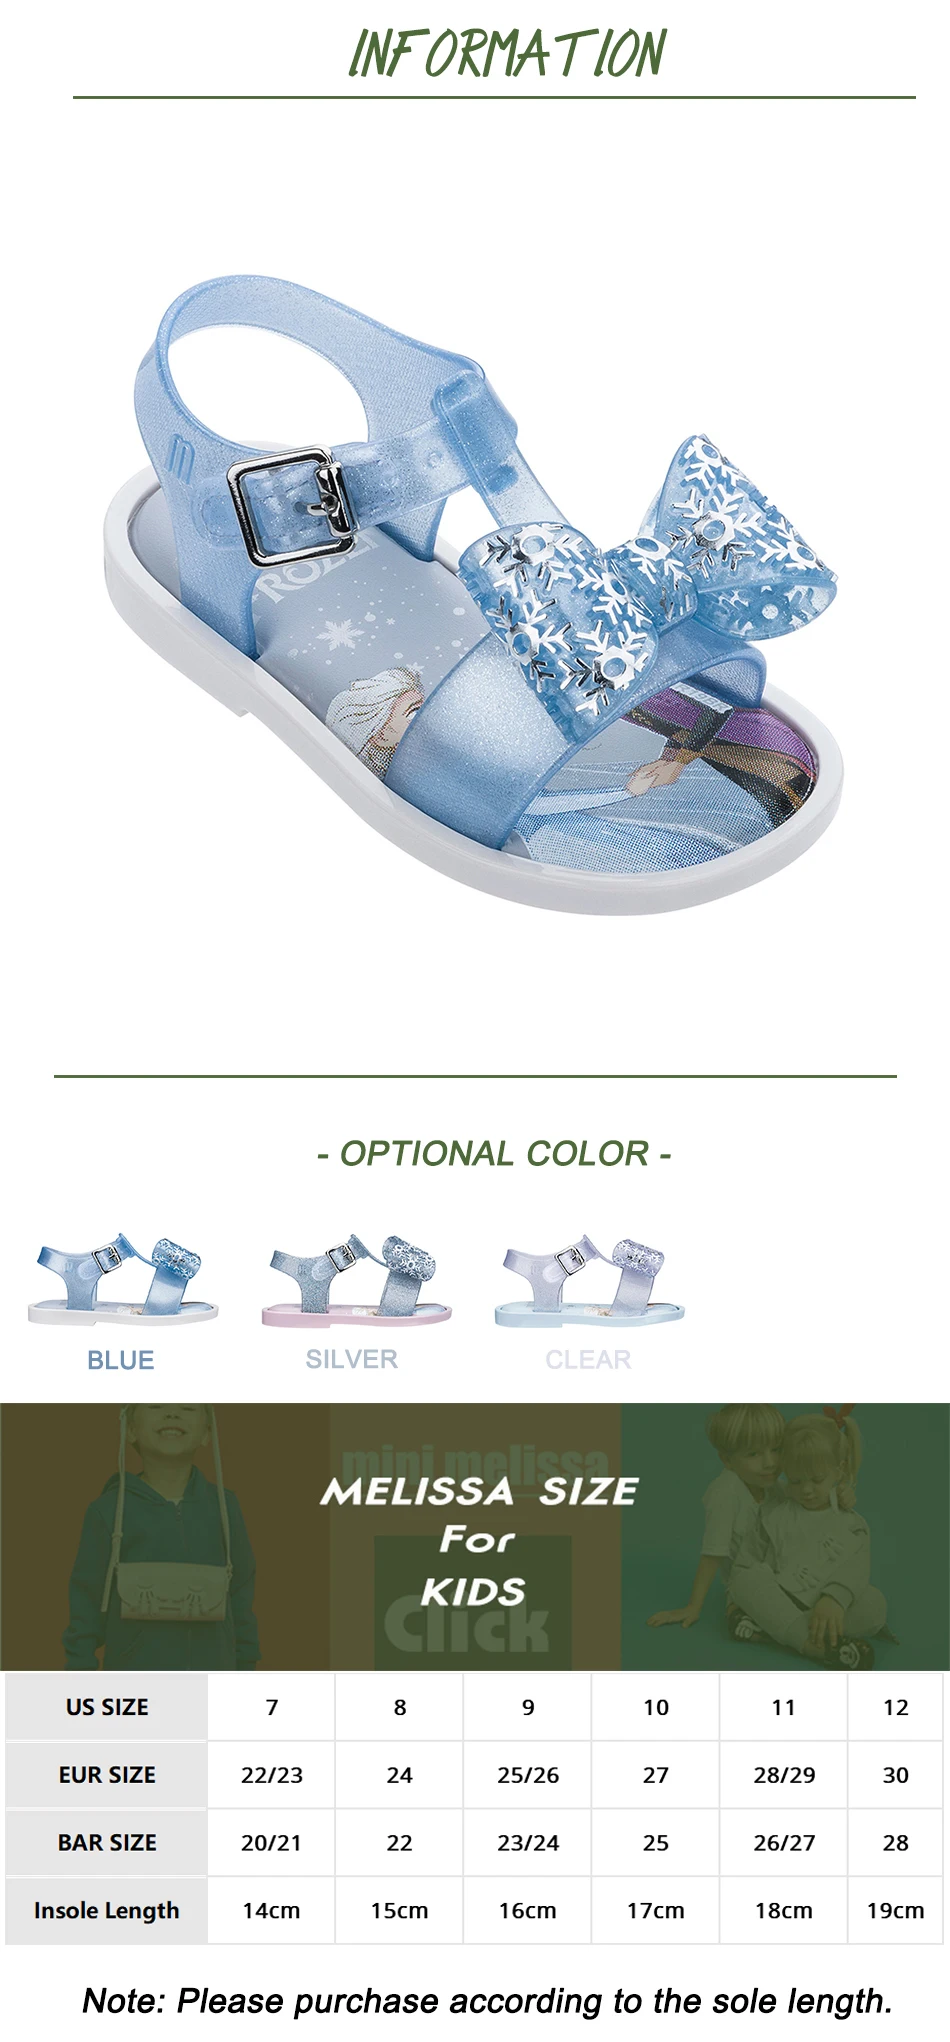 Mini Melissa Cute Sandal Snow Princess Girl Jelly Shoes Sandals 2020 Baby Shoes Melissa Sandals for Kids Beach Sandals Summer